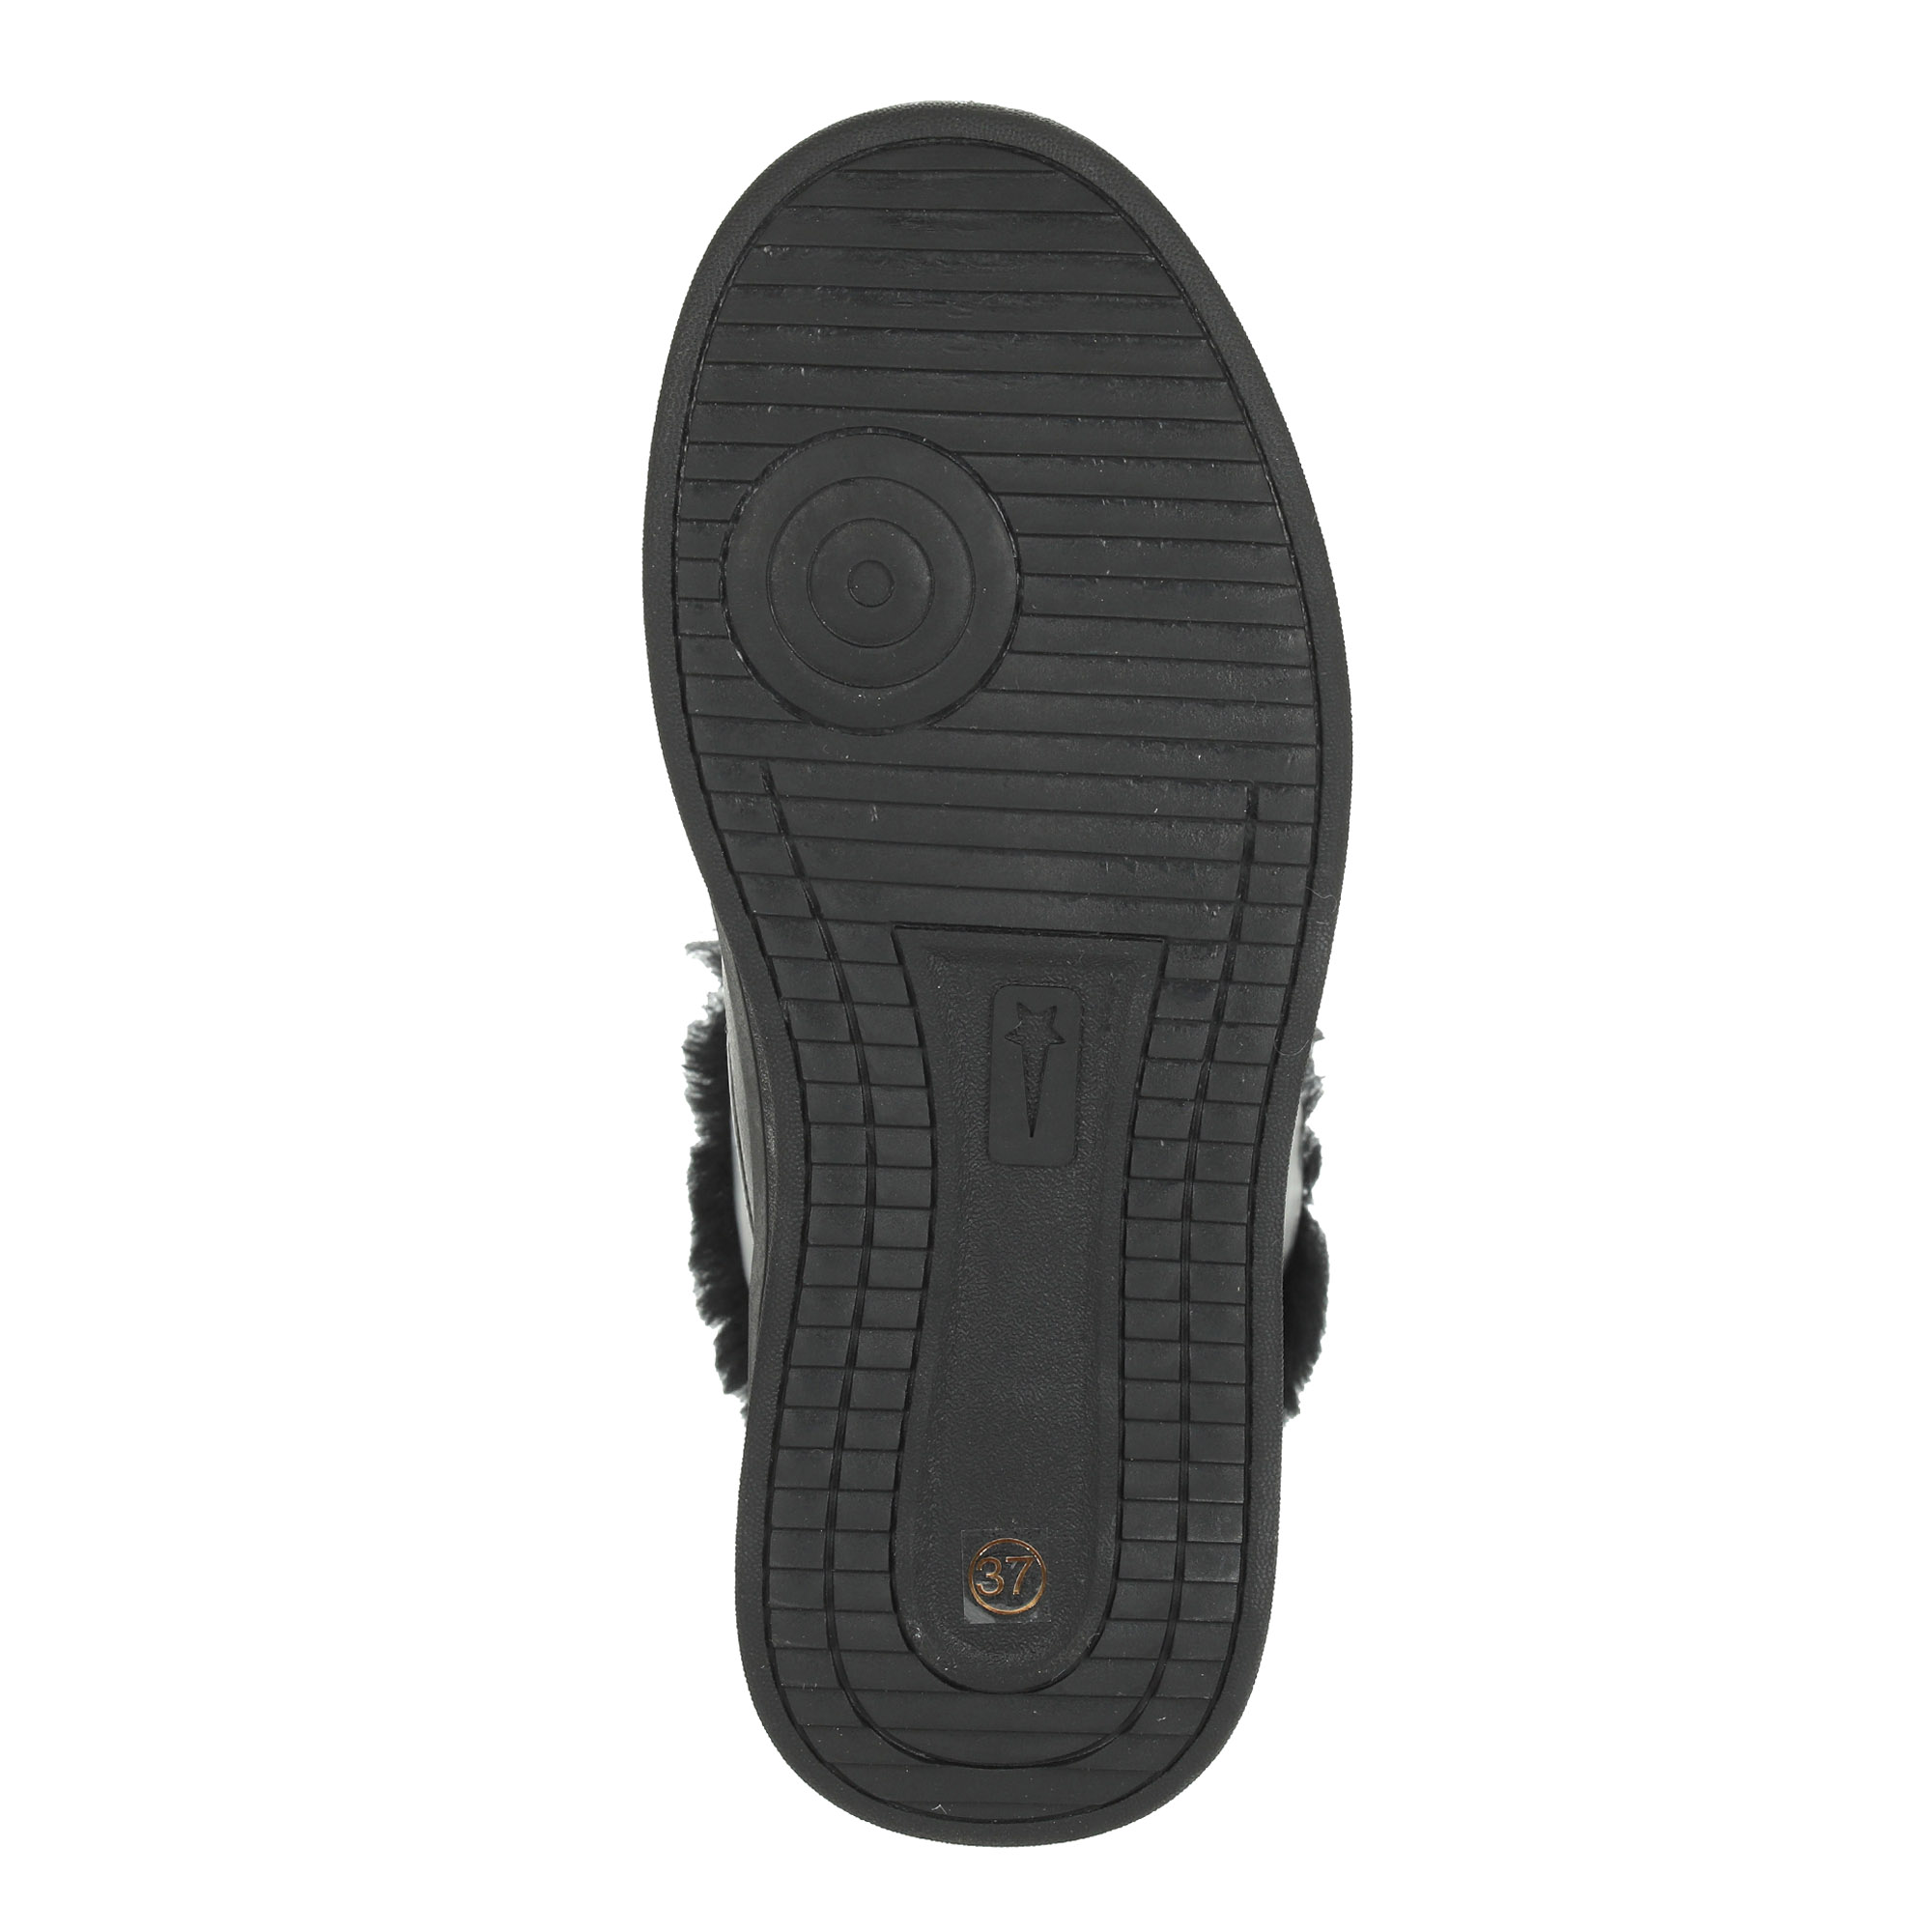 Черные высокие кроссовки из комбинированных материалов смеховой опушкой на подкладке из натуральной шерсти на утолщенной платформе Respect, размер 39, цвет черный - фото 8